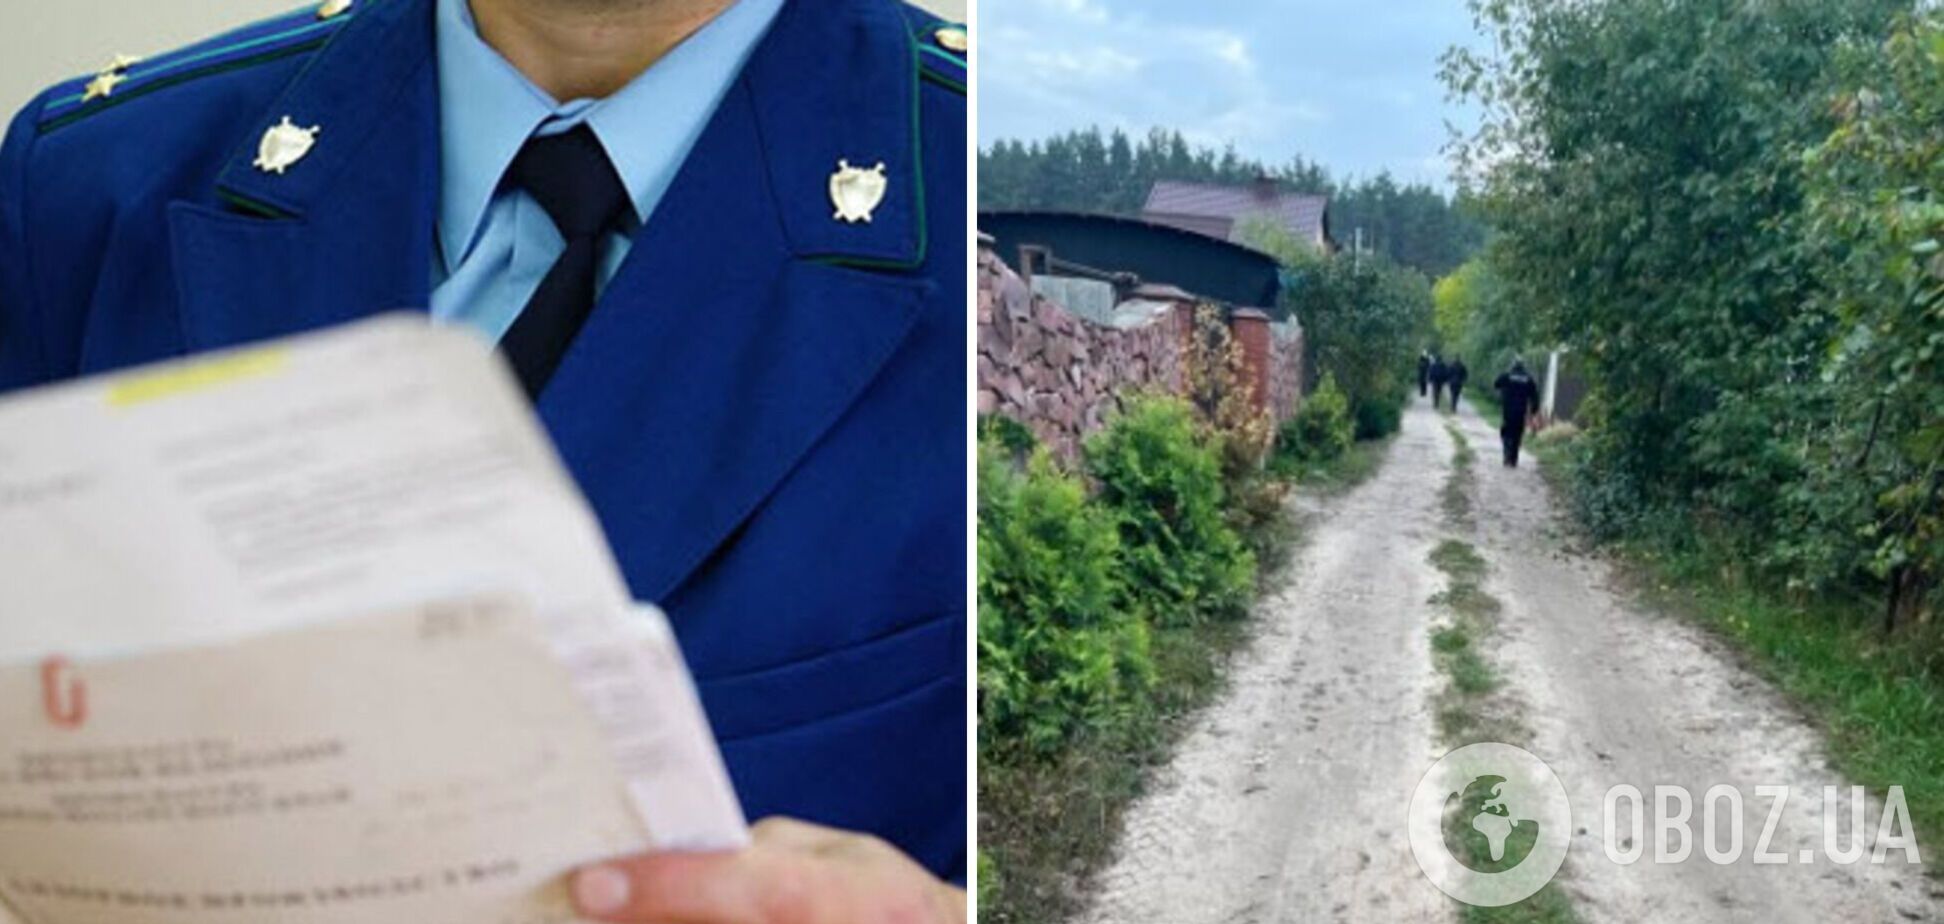 'Голову сховав у чагарниках': на Київщині чоловік убив власного сина і розчленував його тіло